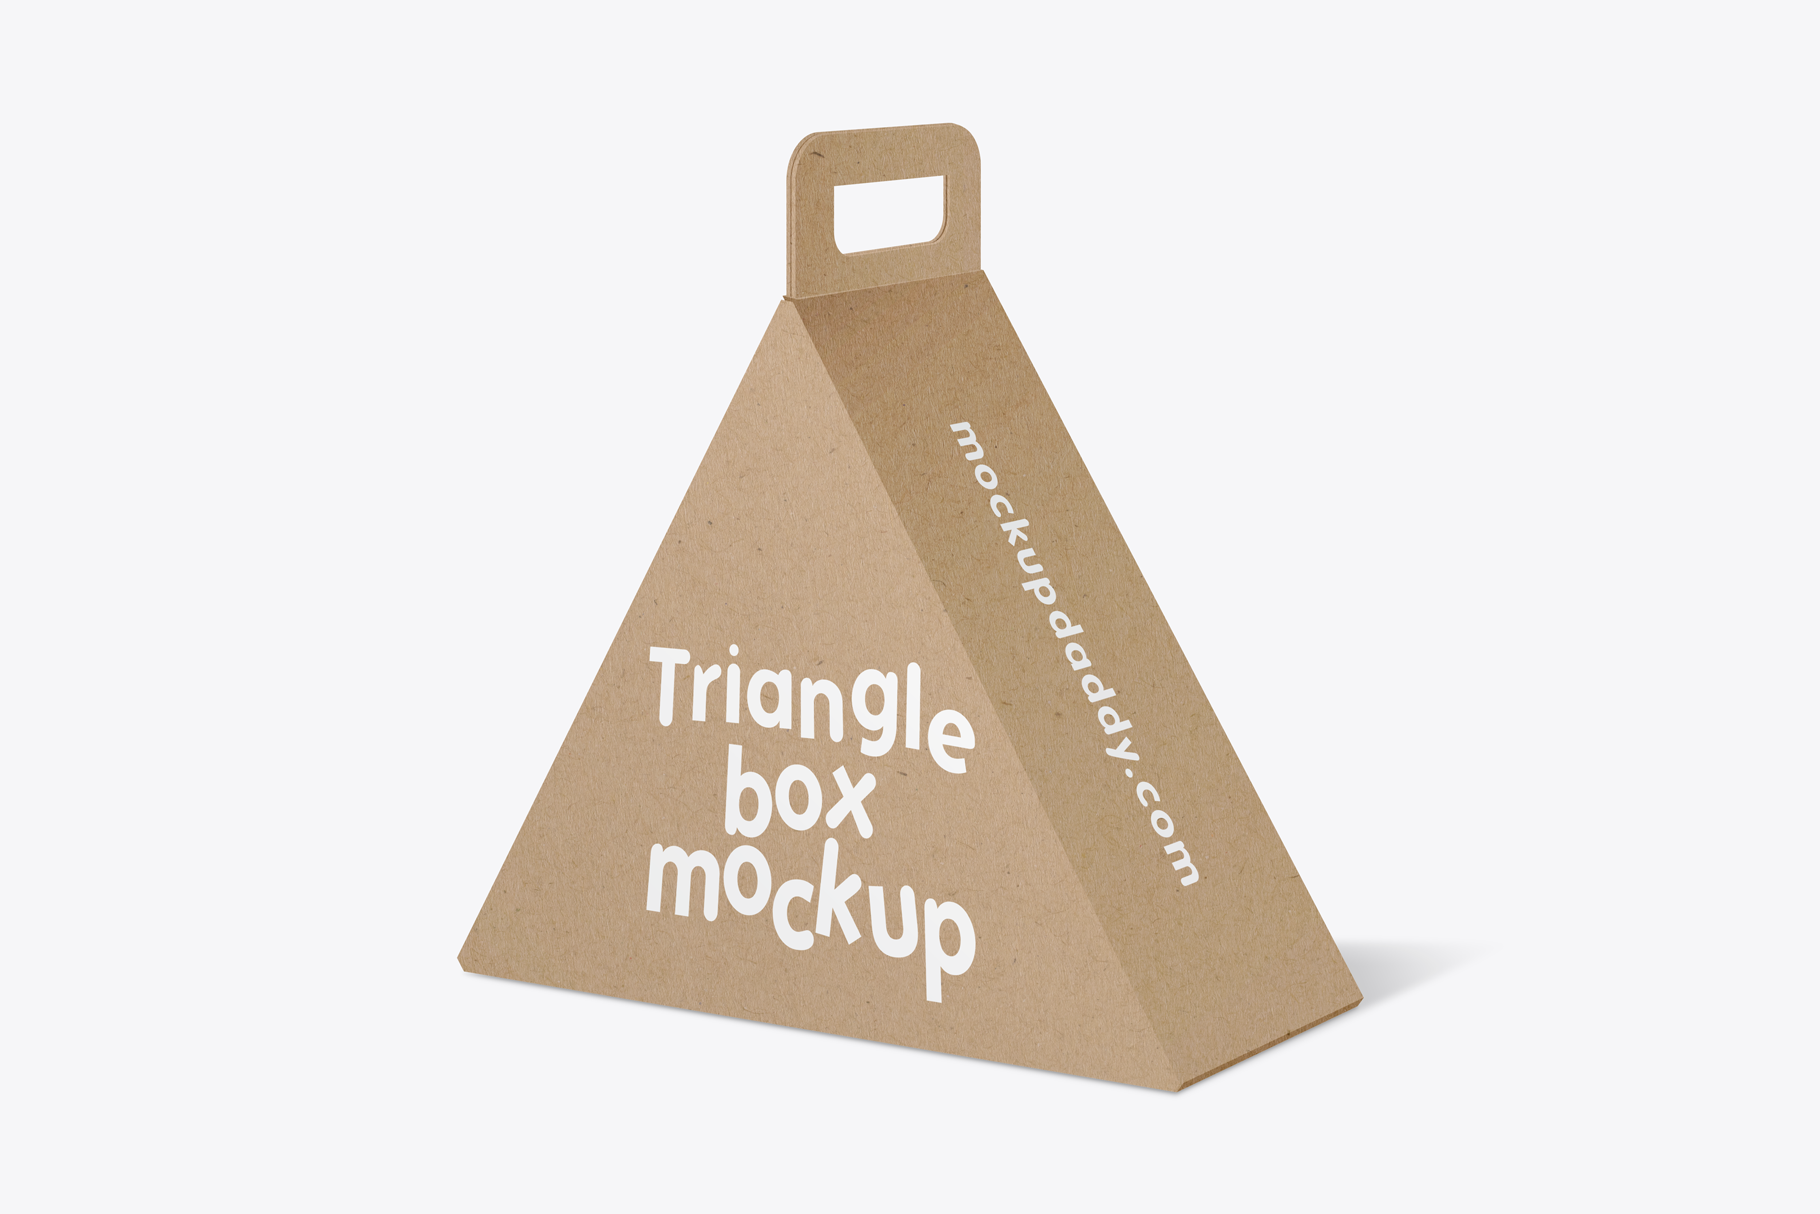 Triangle-Box-Mockup in brown color